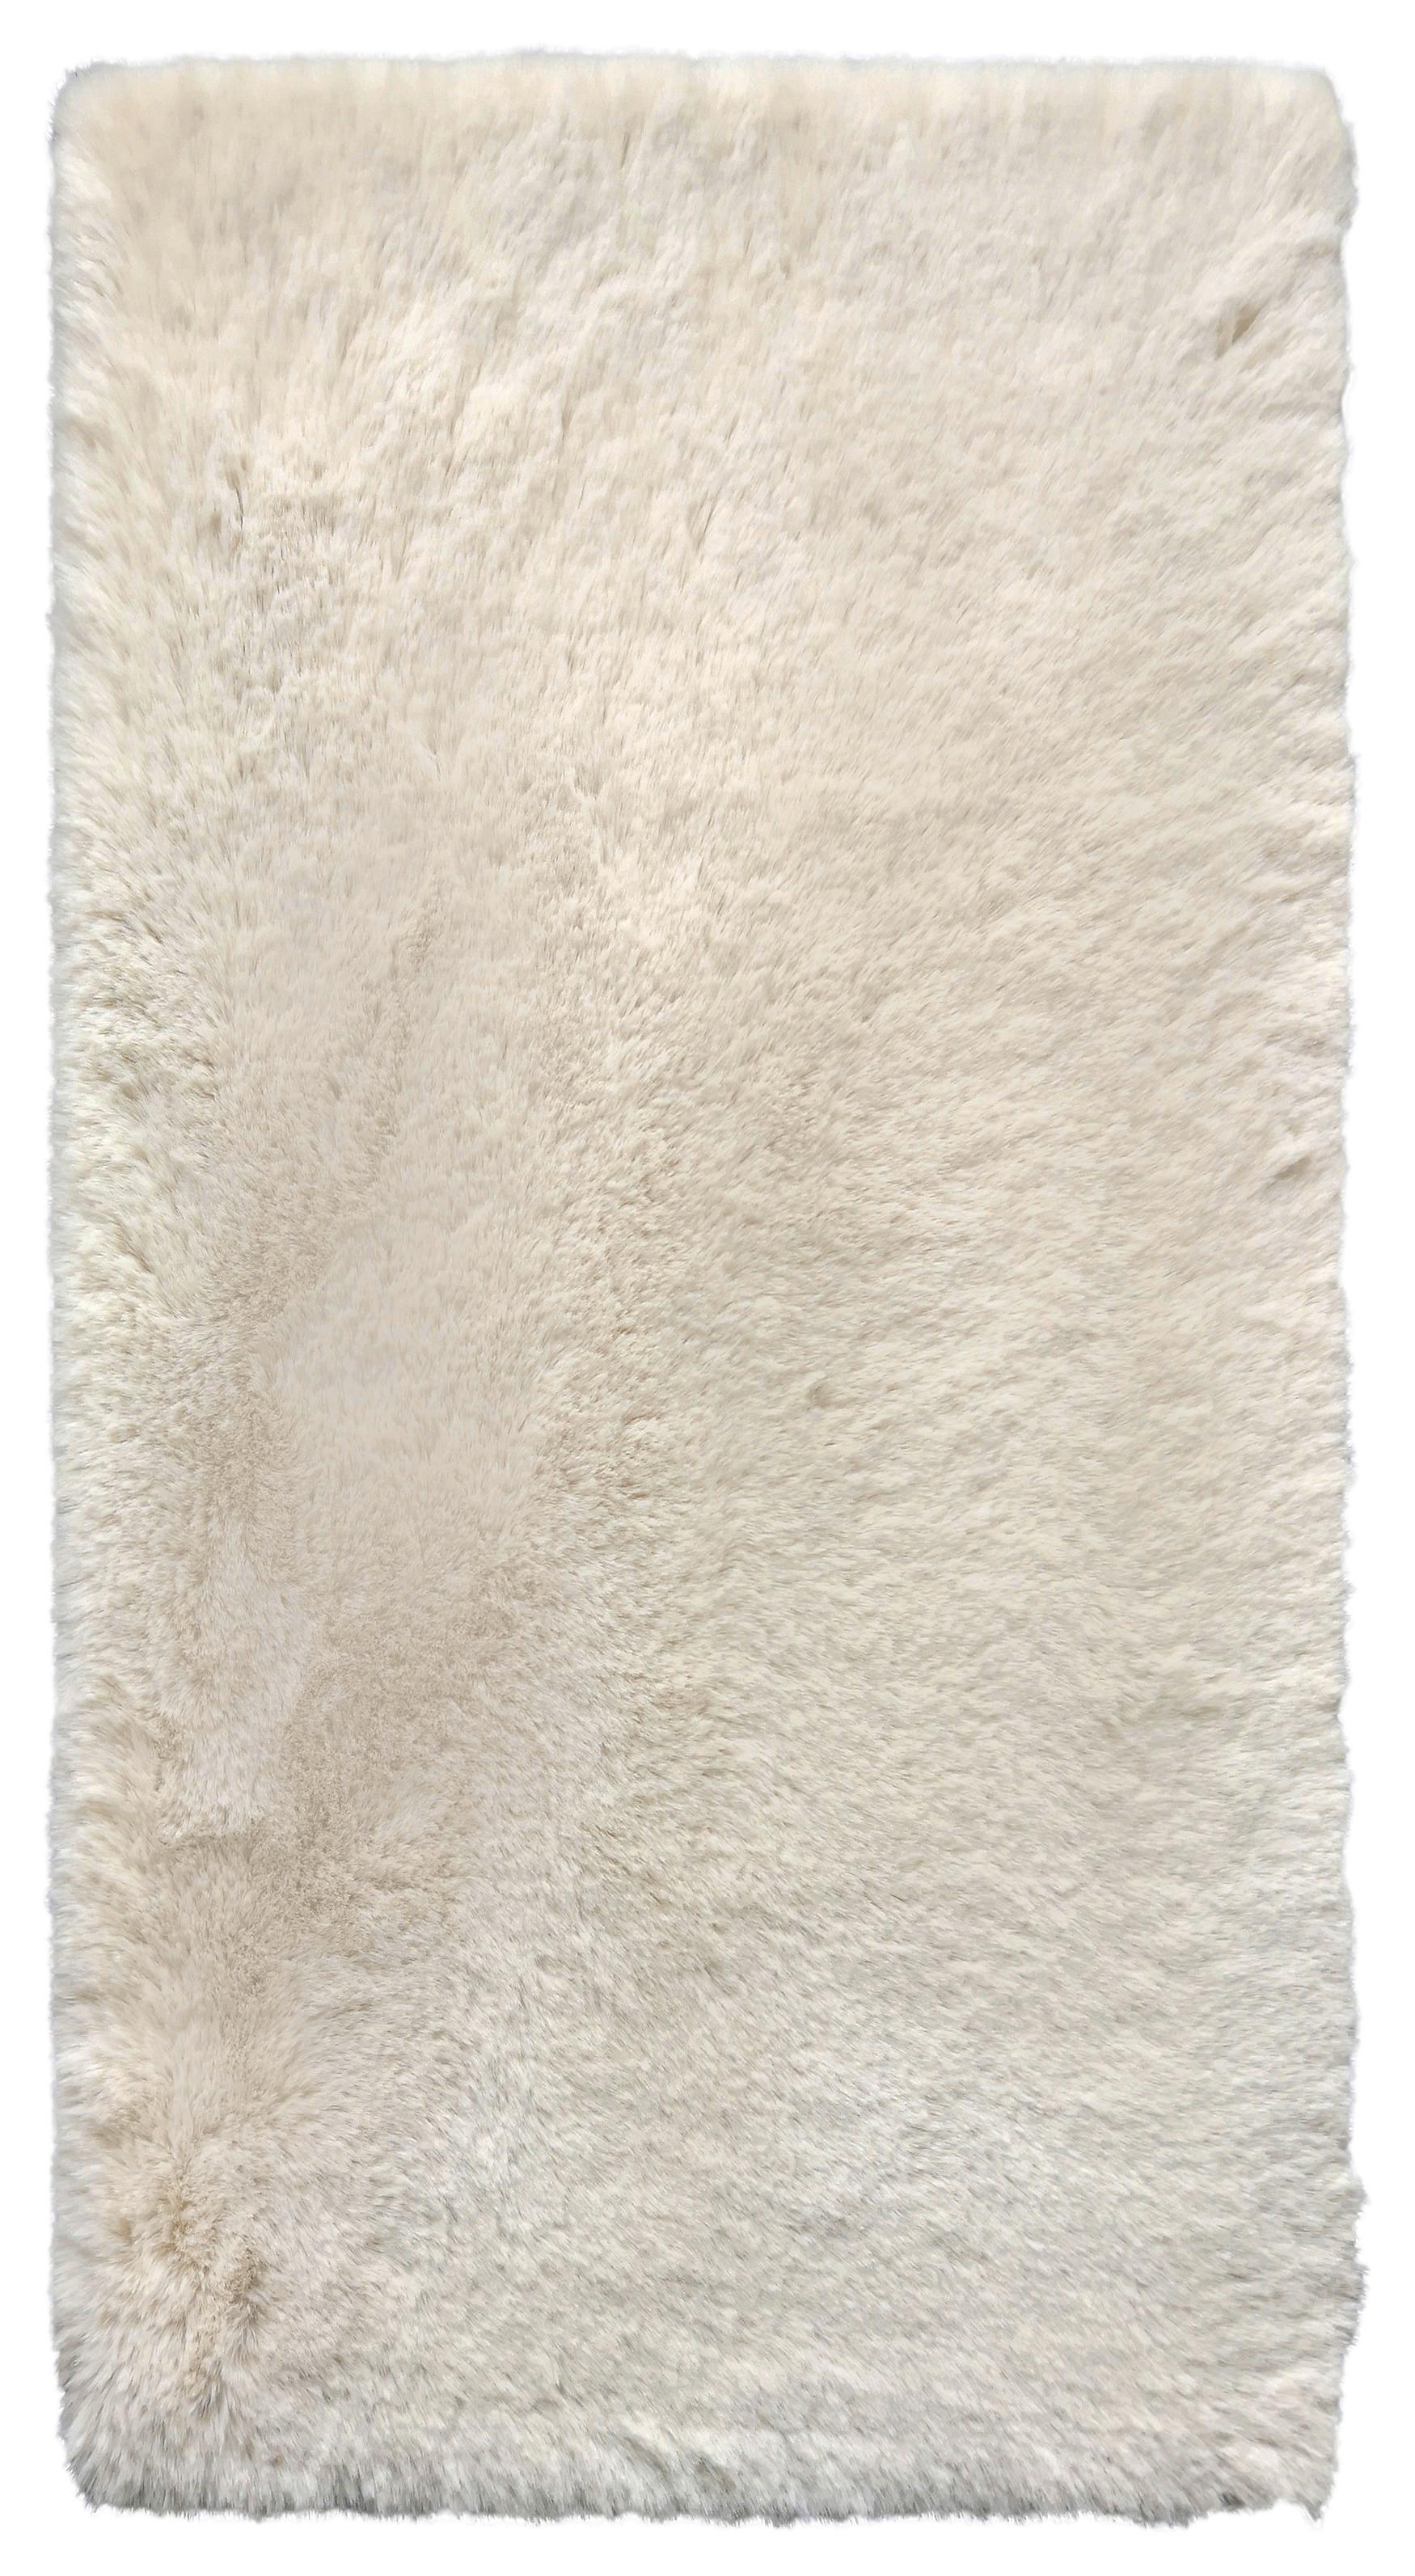 Blană artificială Caroline 1 - bej, textil (80/150cm) - Modern Living